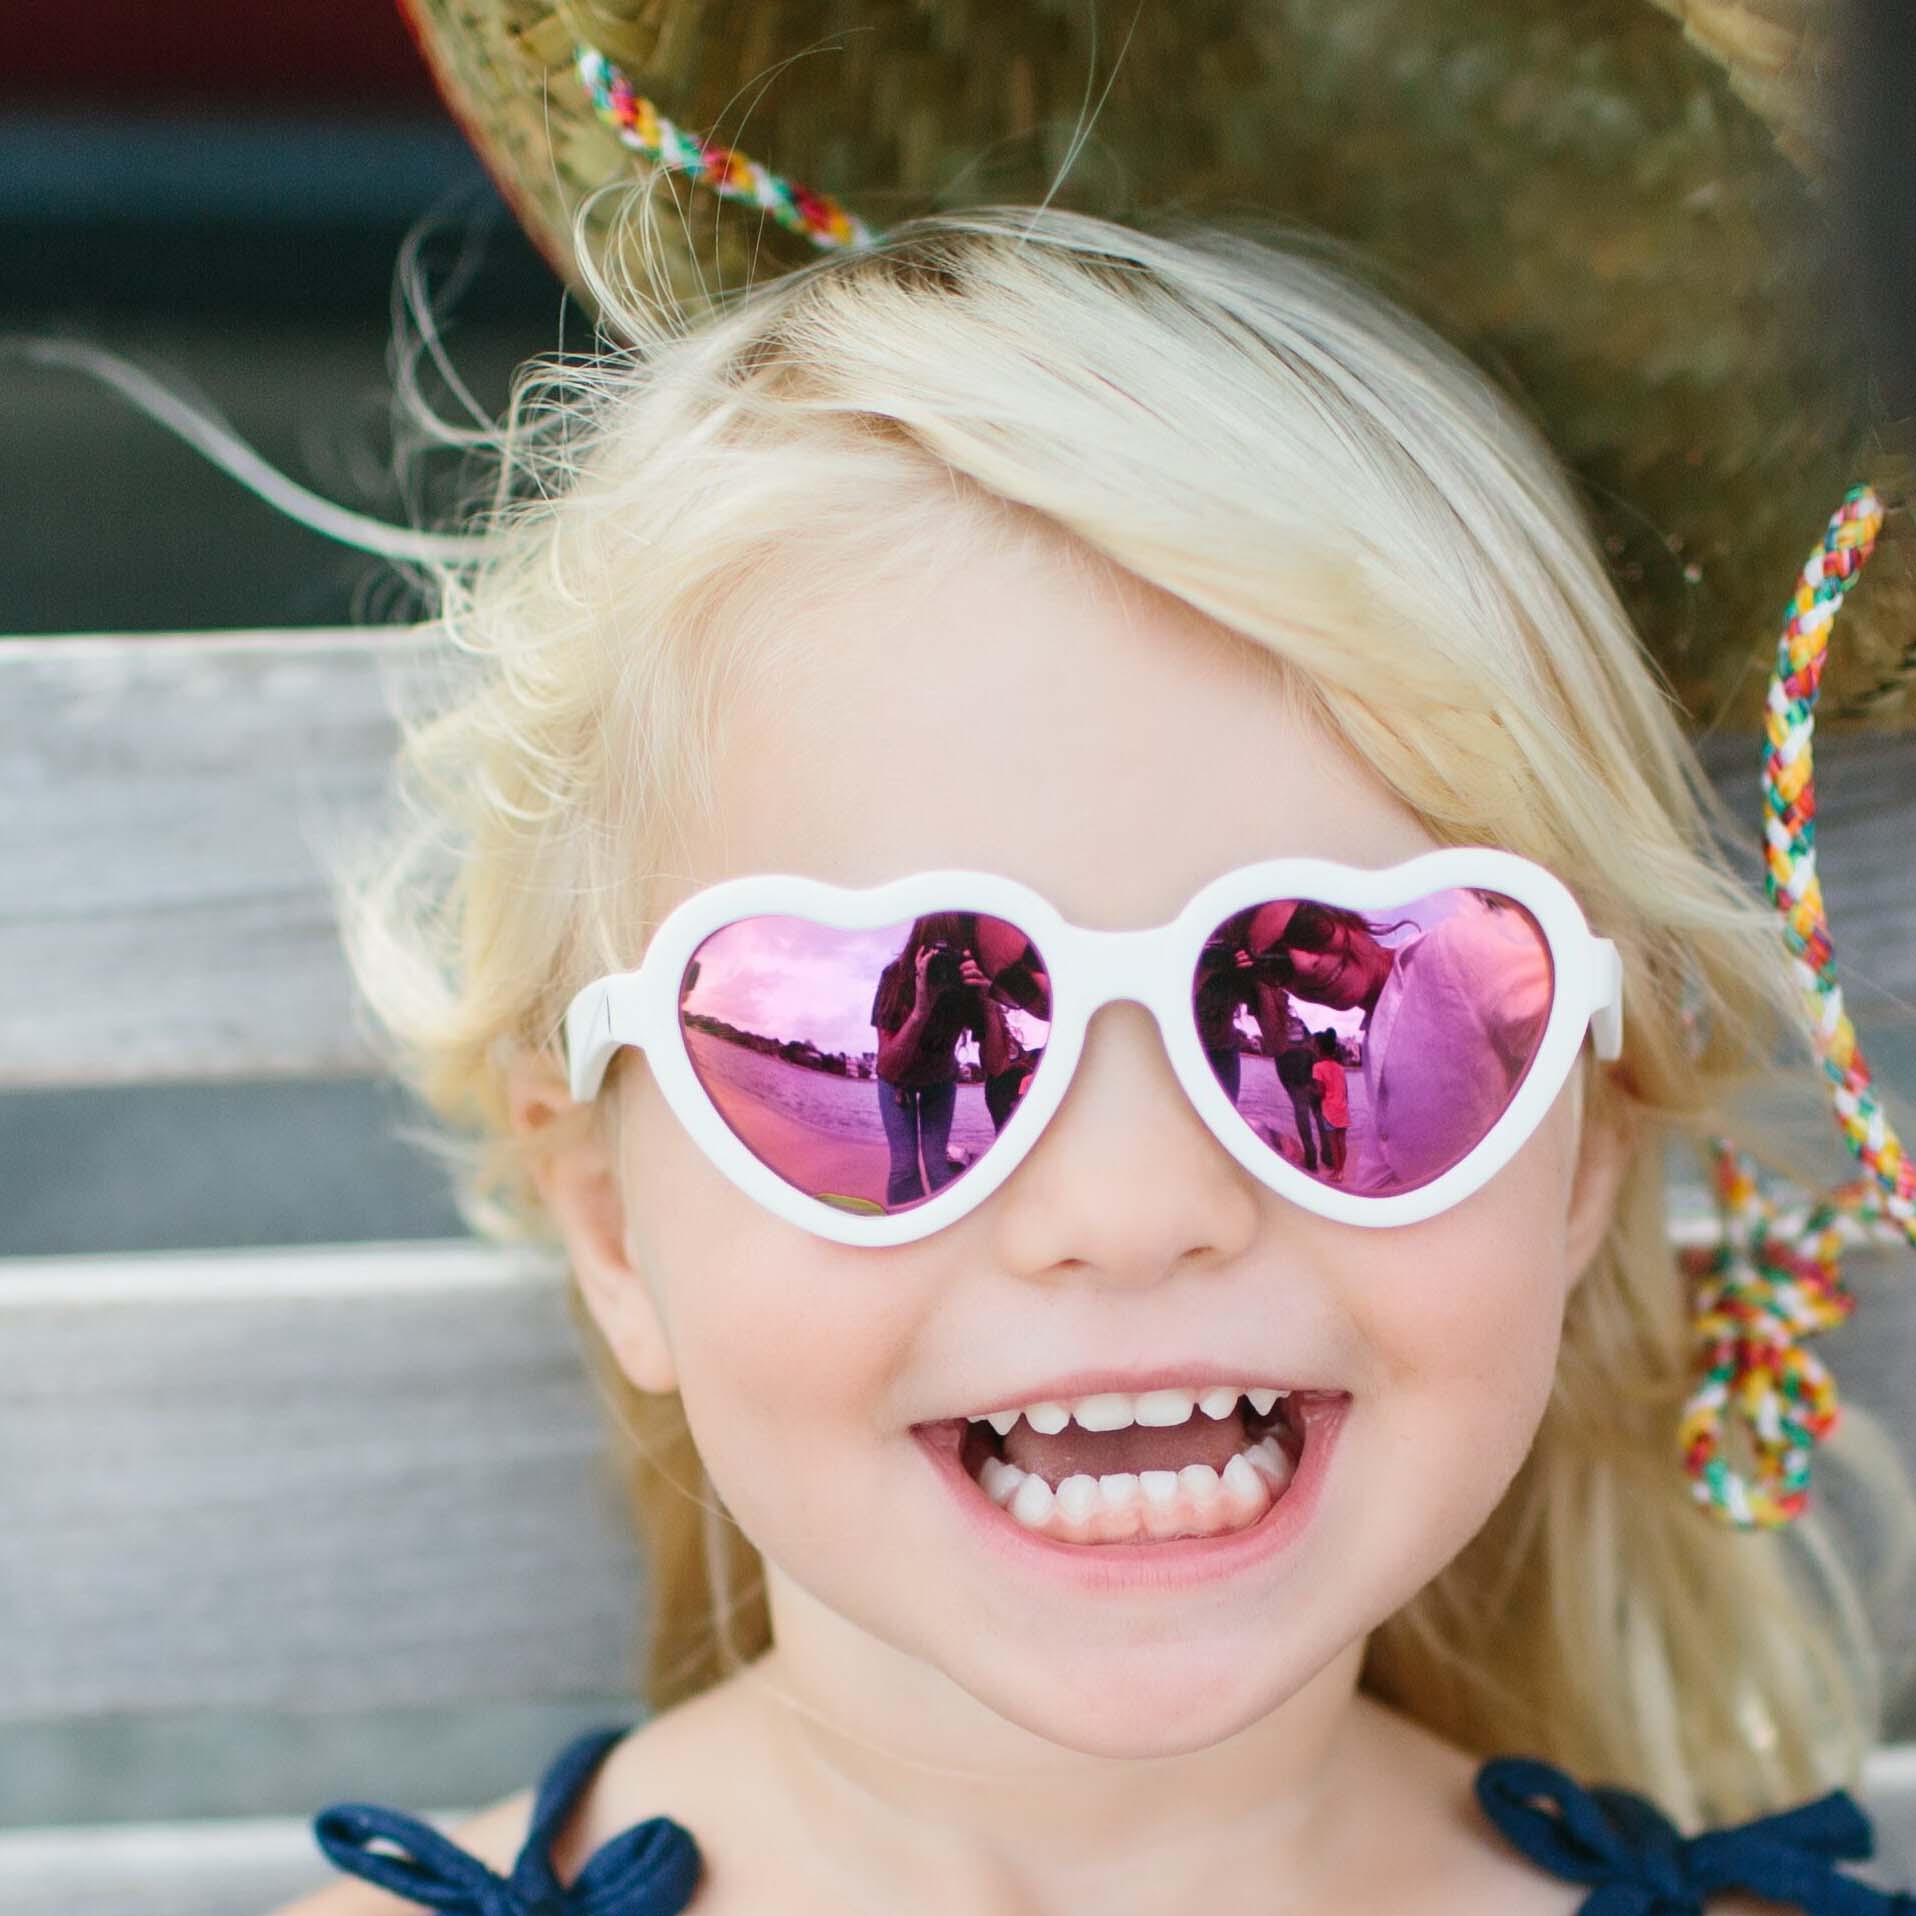 Солнцезащитные очки - Babiators Hearts. Влюбляшки/Sweethearts Junior, белые/розовые зеркальные,  